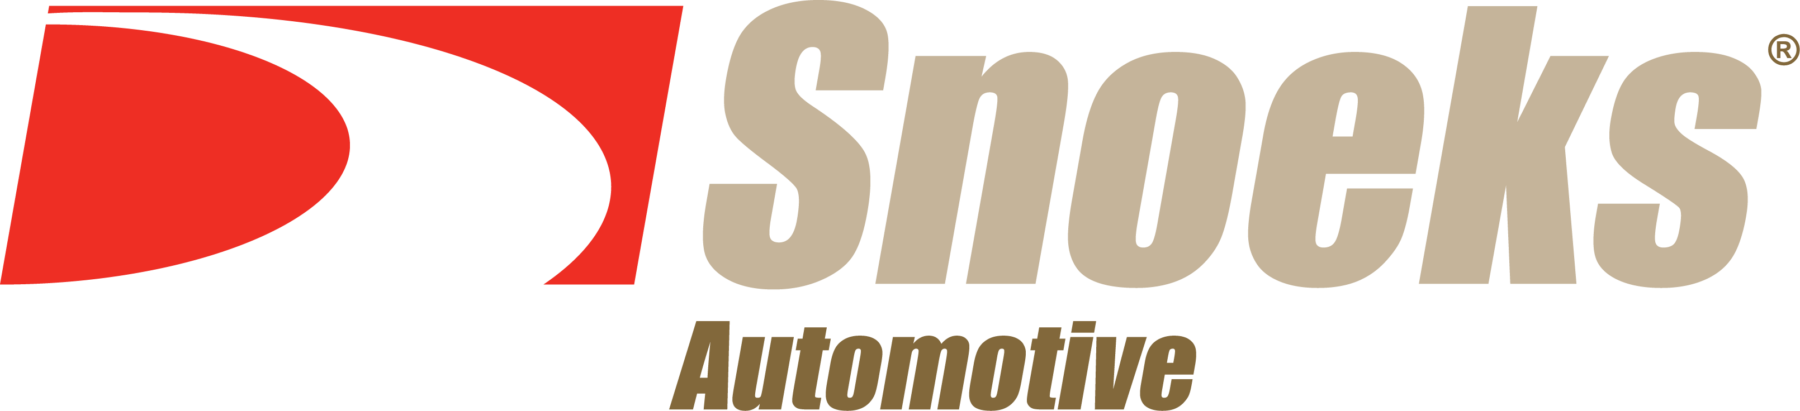 Reference teambuilding - Snoeks Automotive CZ s.r.o.,2019